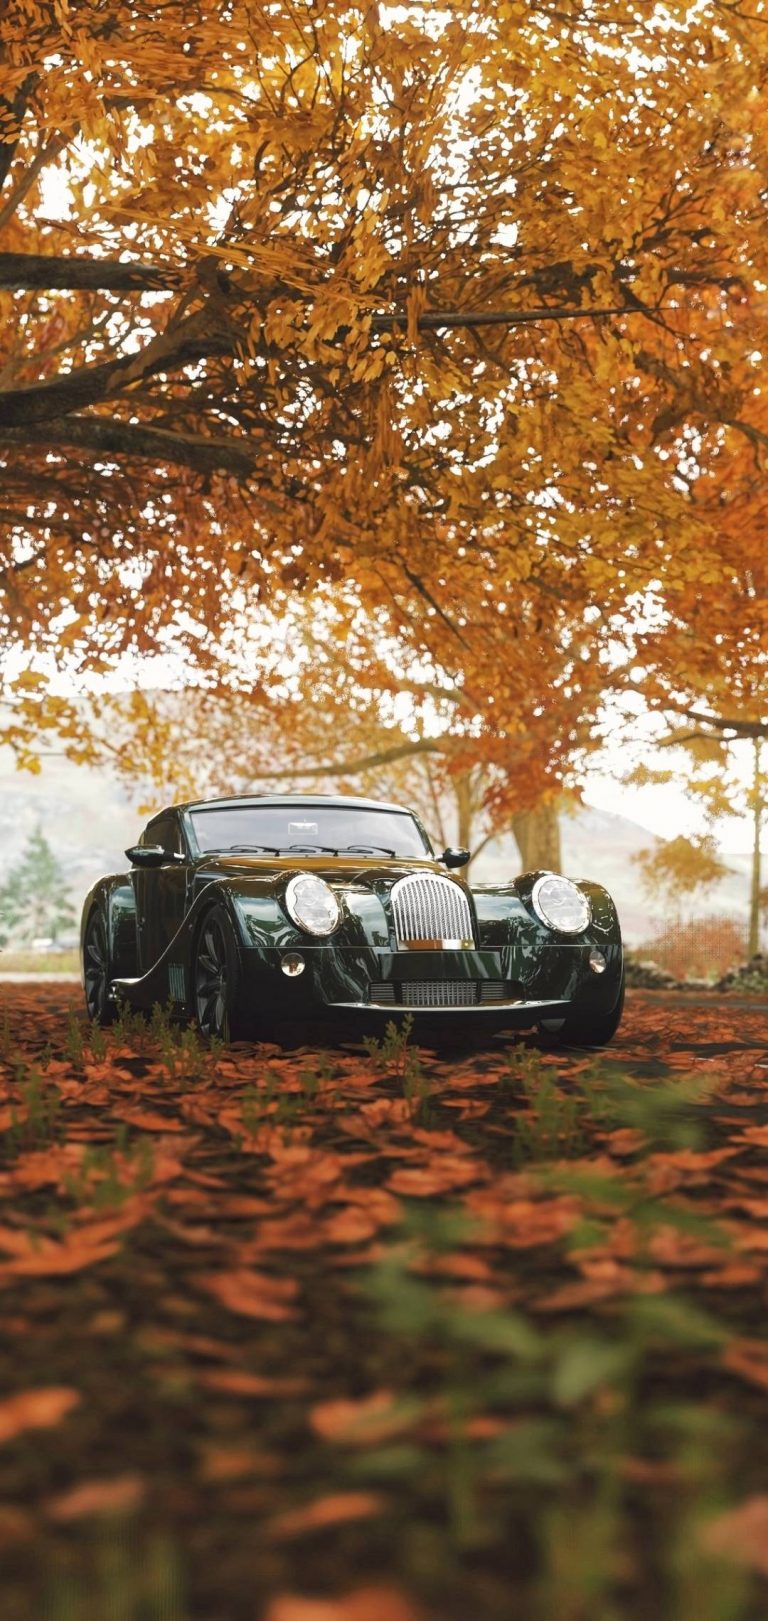 Autumn Season Leaves Car Wallpaper - [1080x2280]